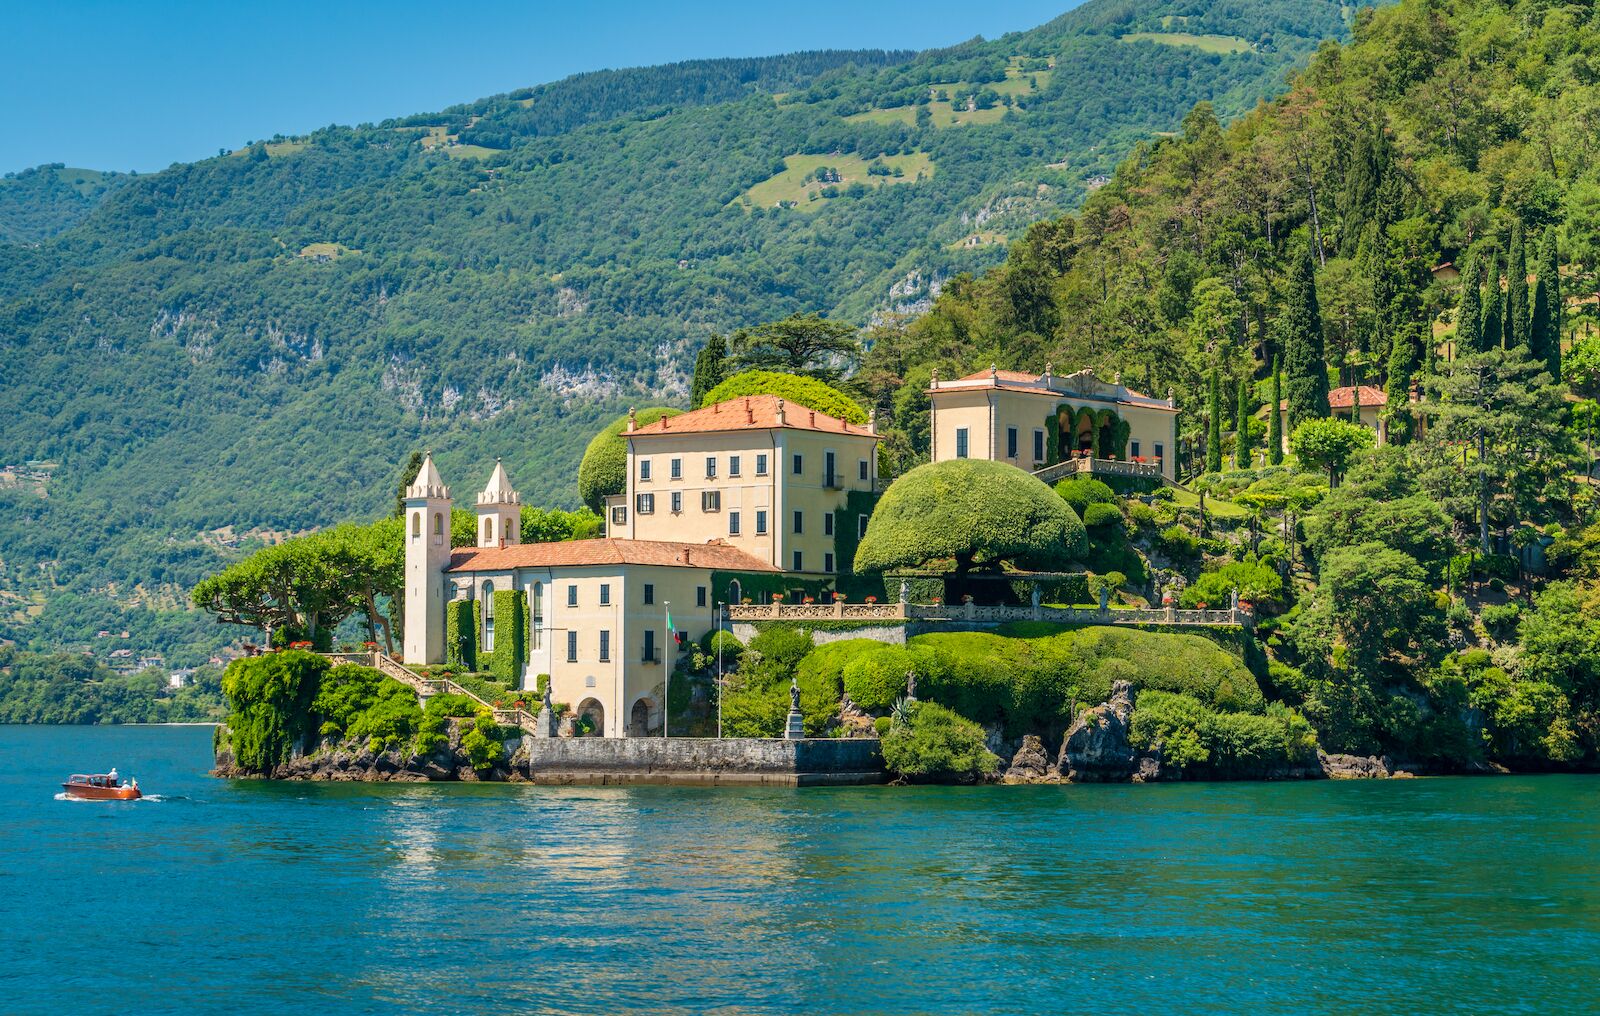 Villa del Balbianello along the shore of Lake Como in Italy